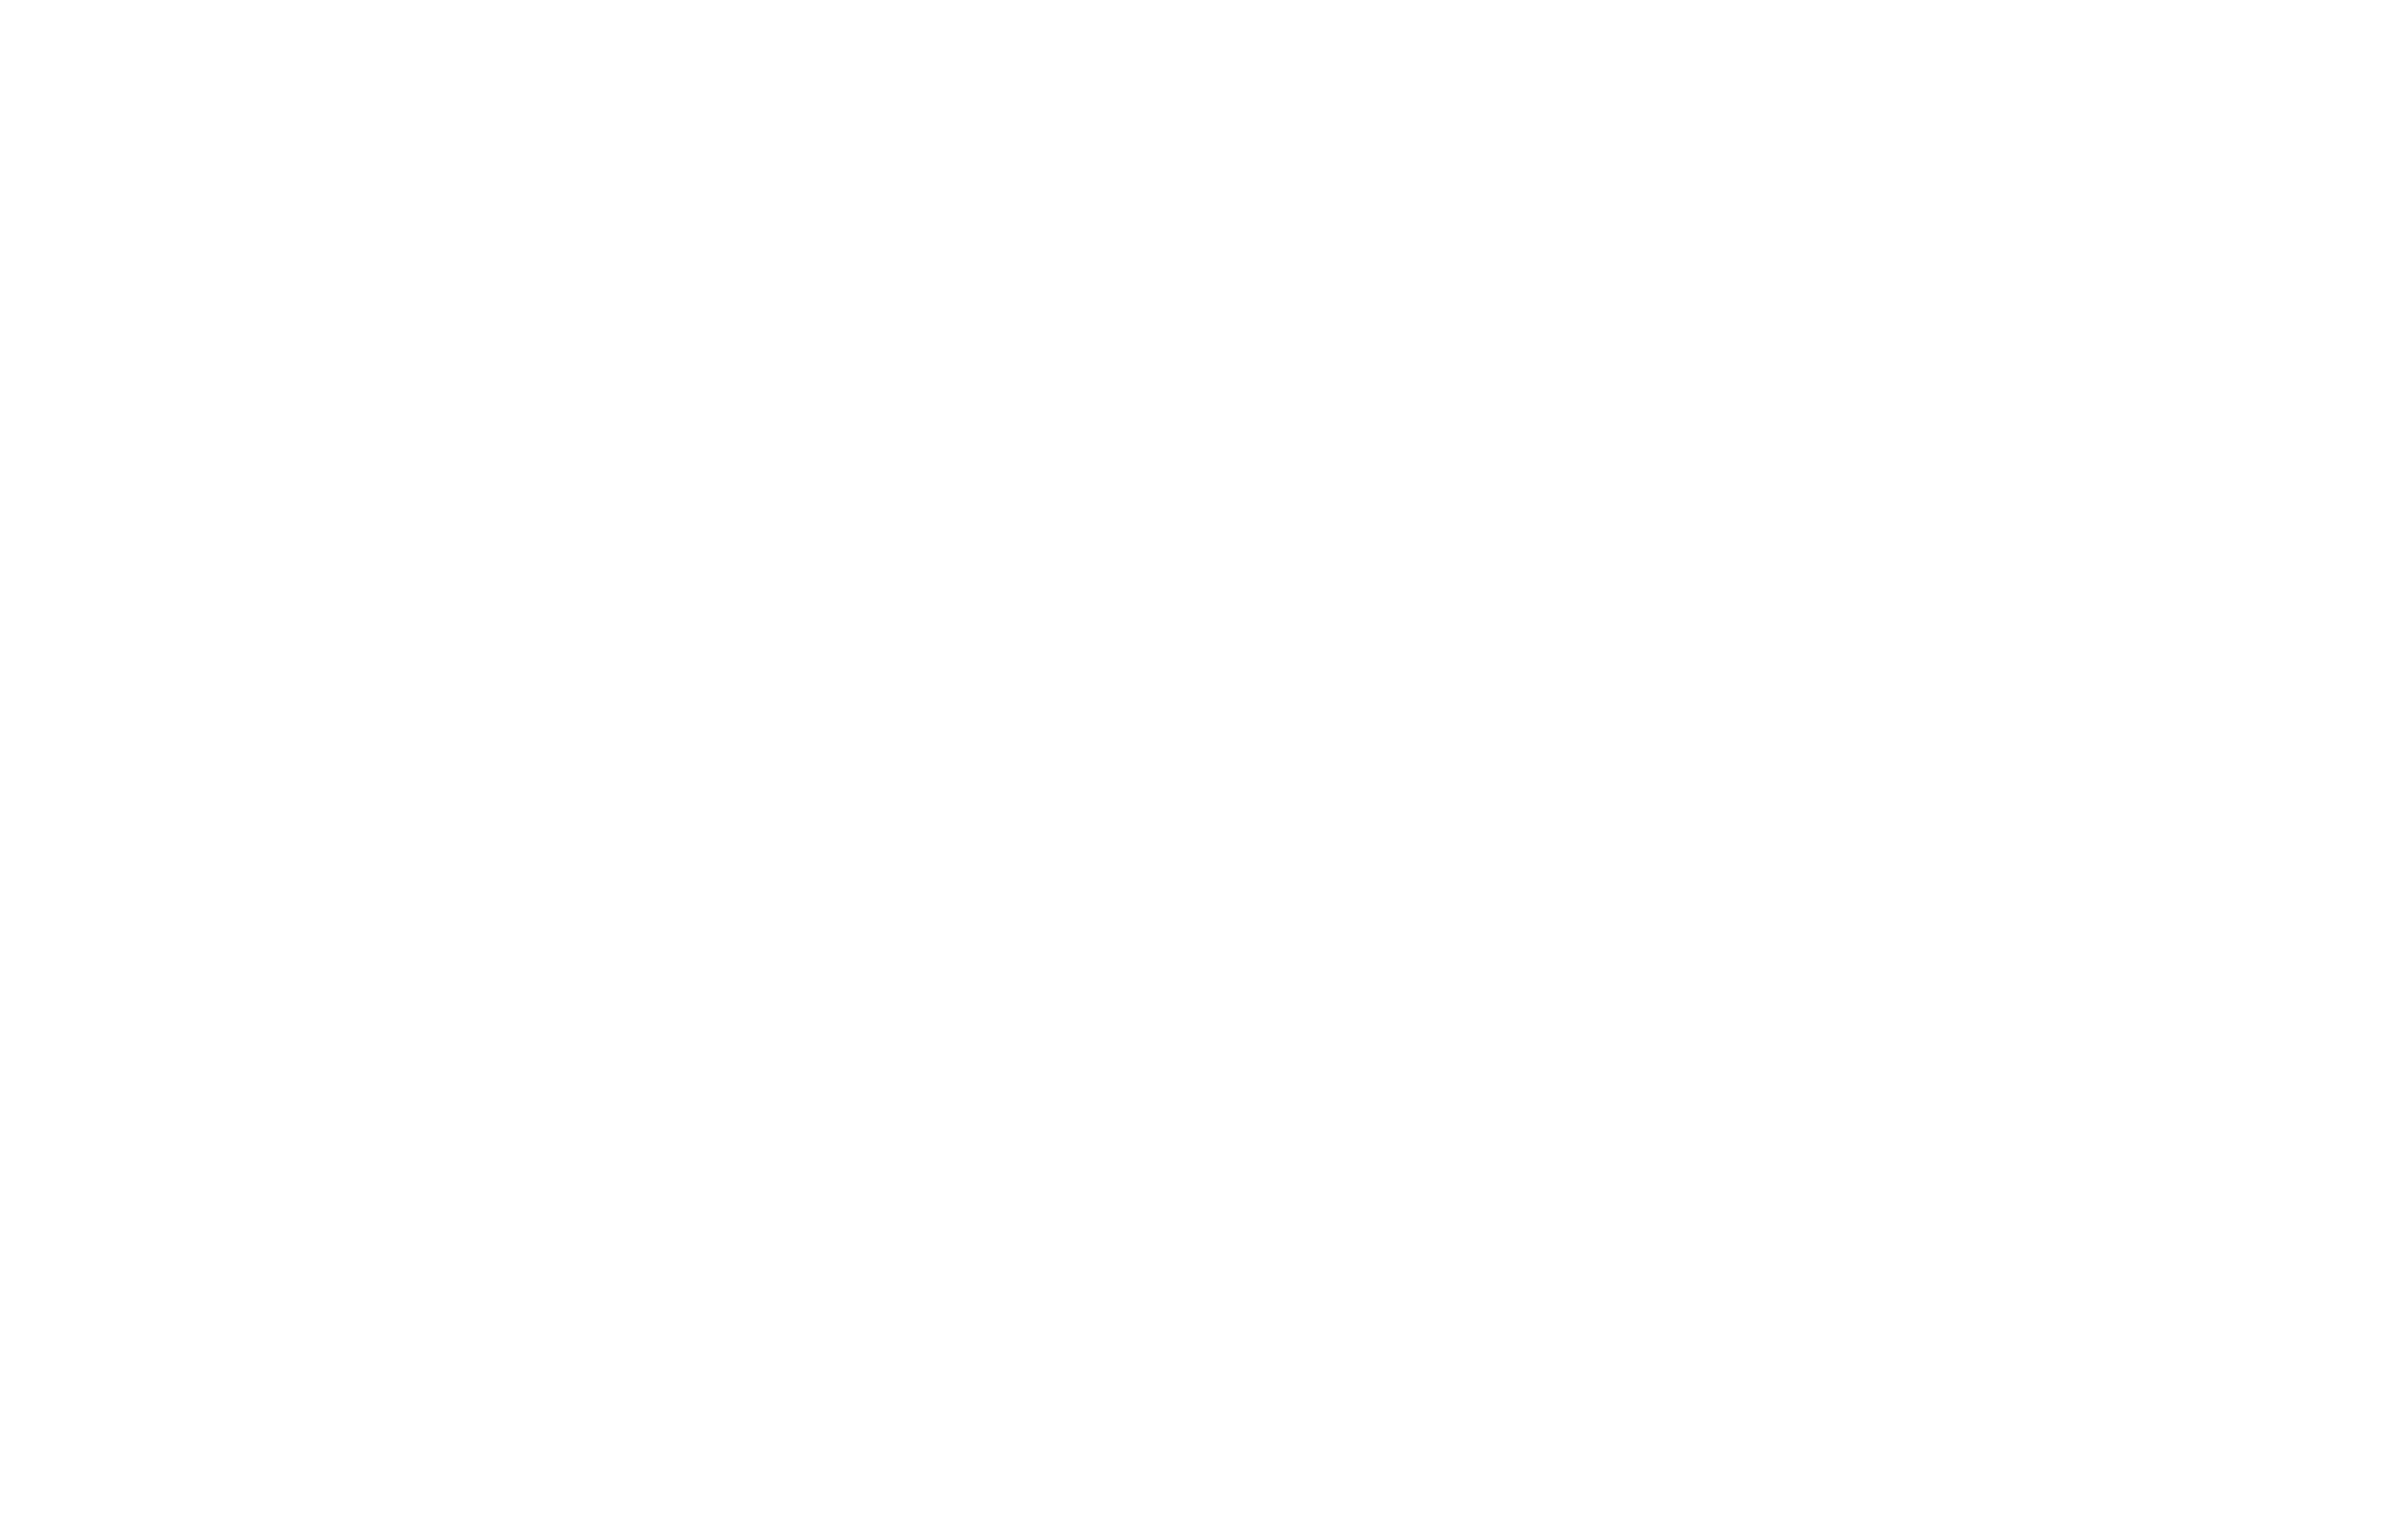 SPD Weimar